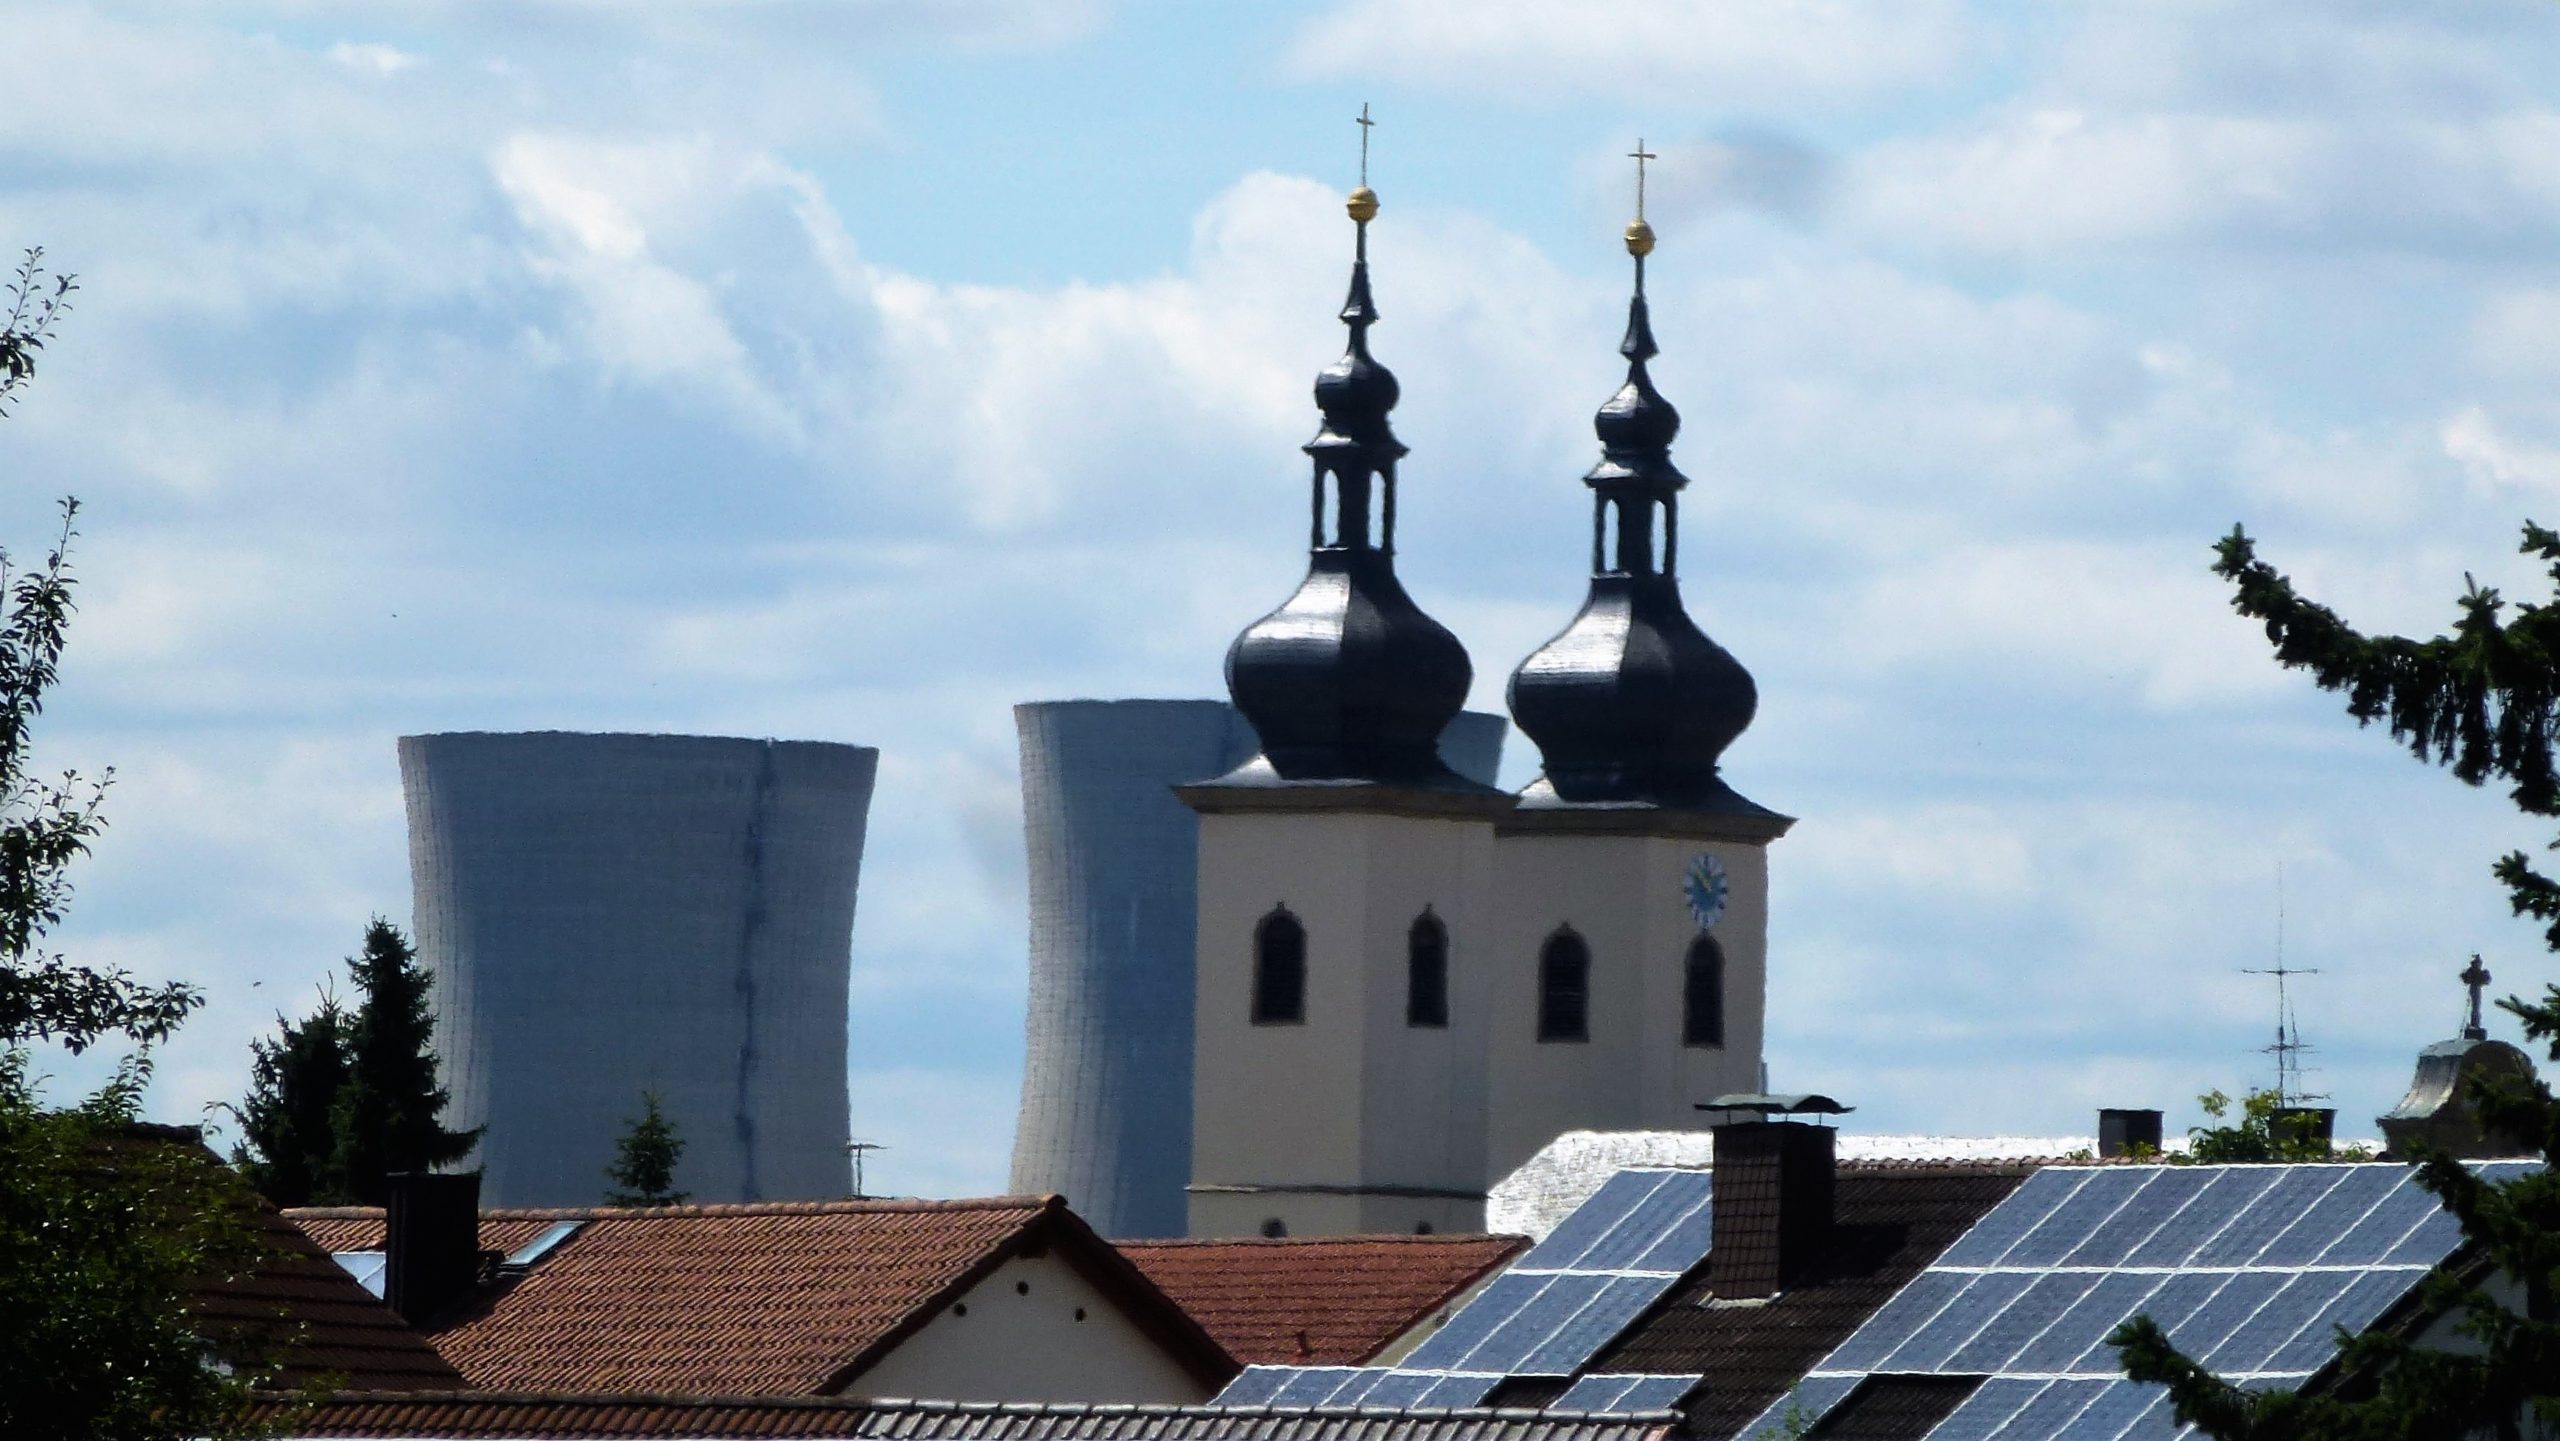 “Bayern steht in der Verantwortung ein Atommülllager zu suchen und diese Suche muss transparent und offen erfolgen!”